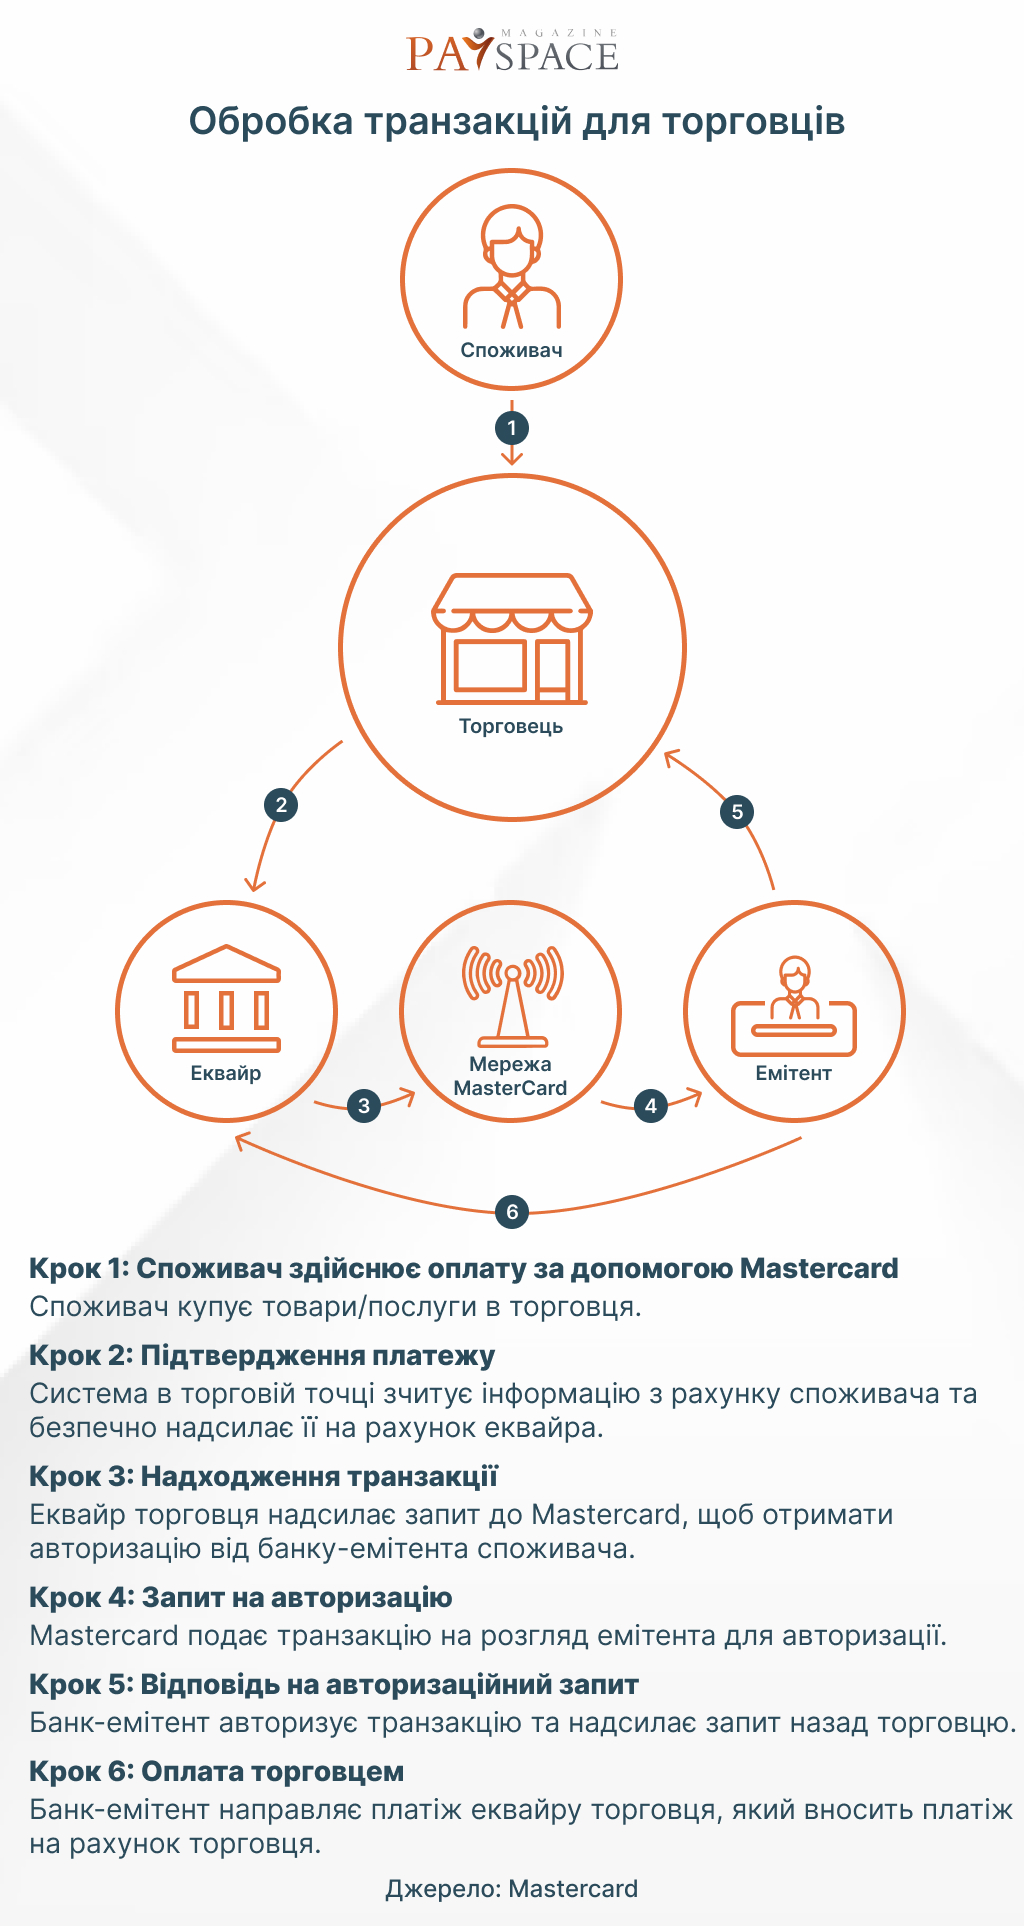 Какие платежные системы в Украине признаны «важными»